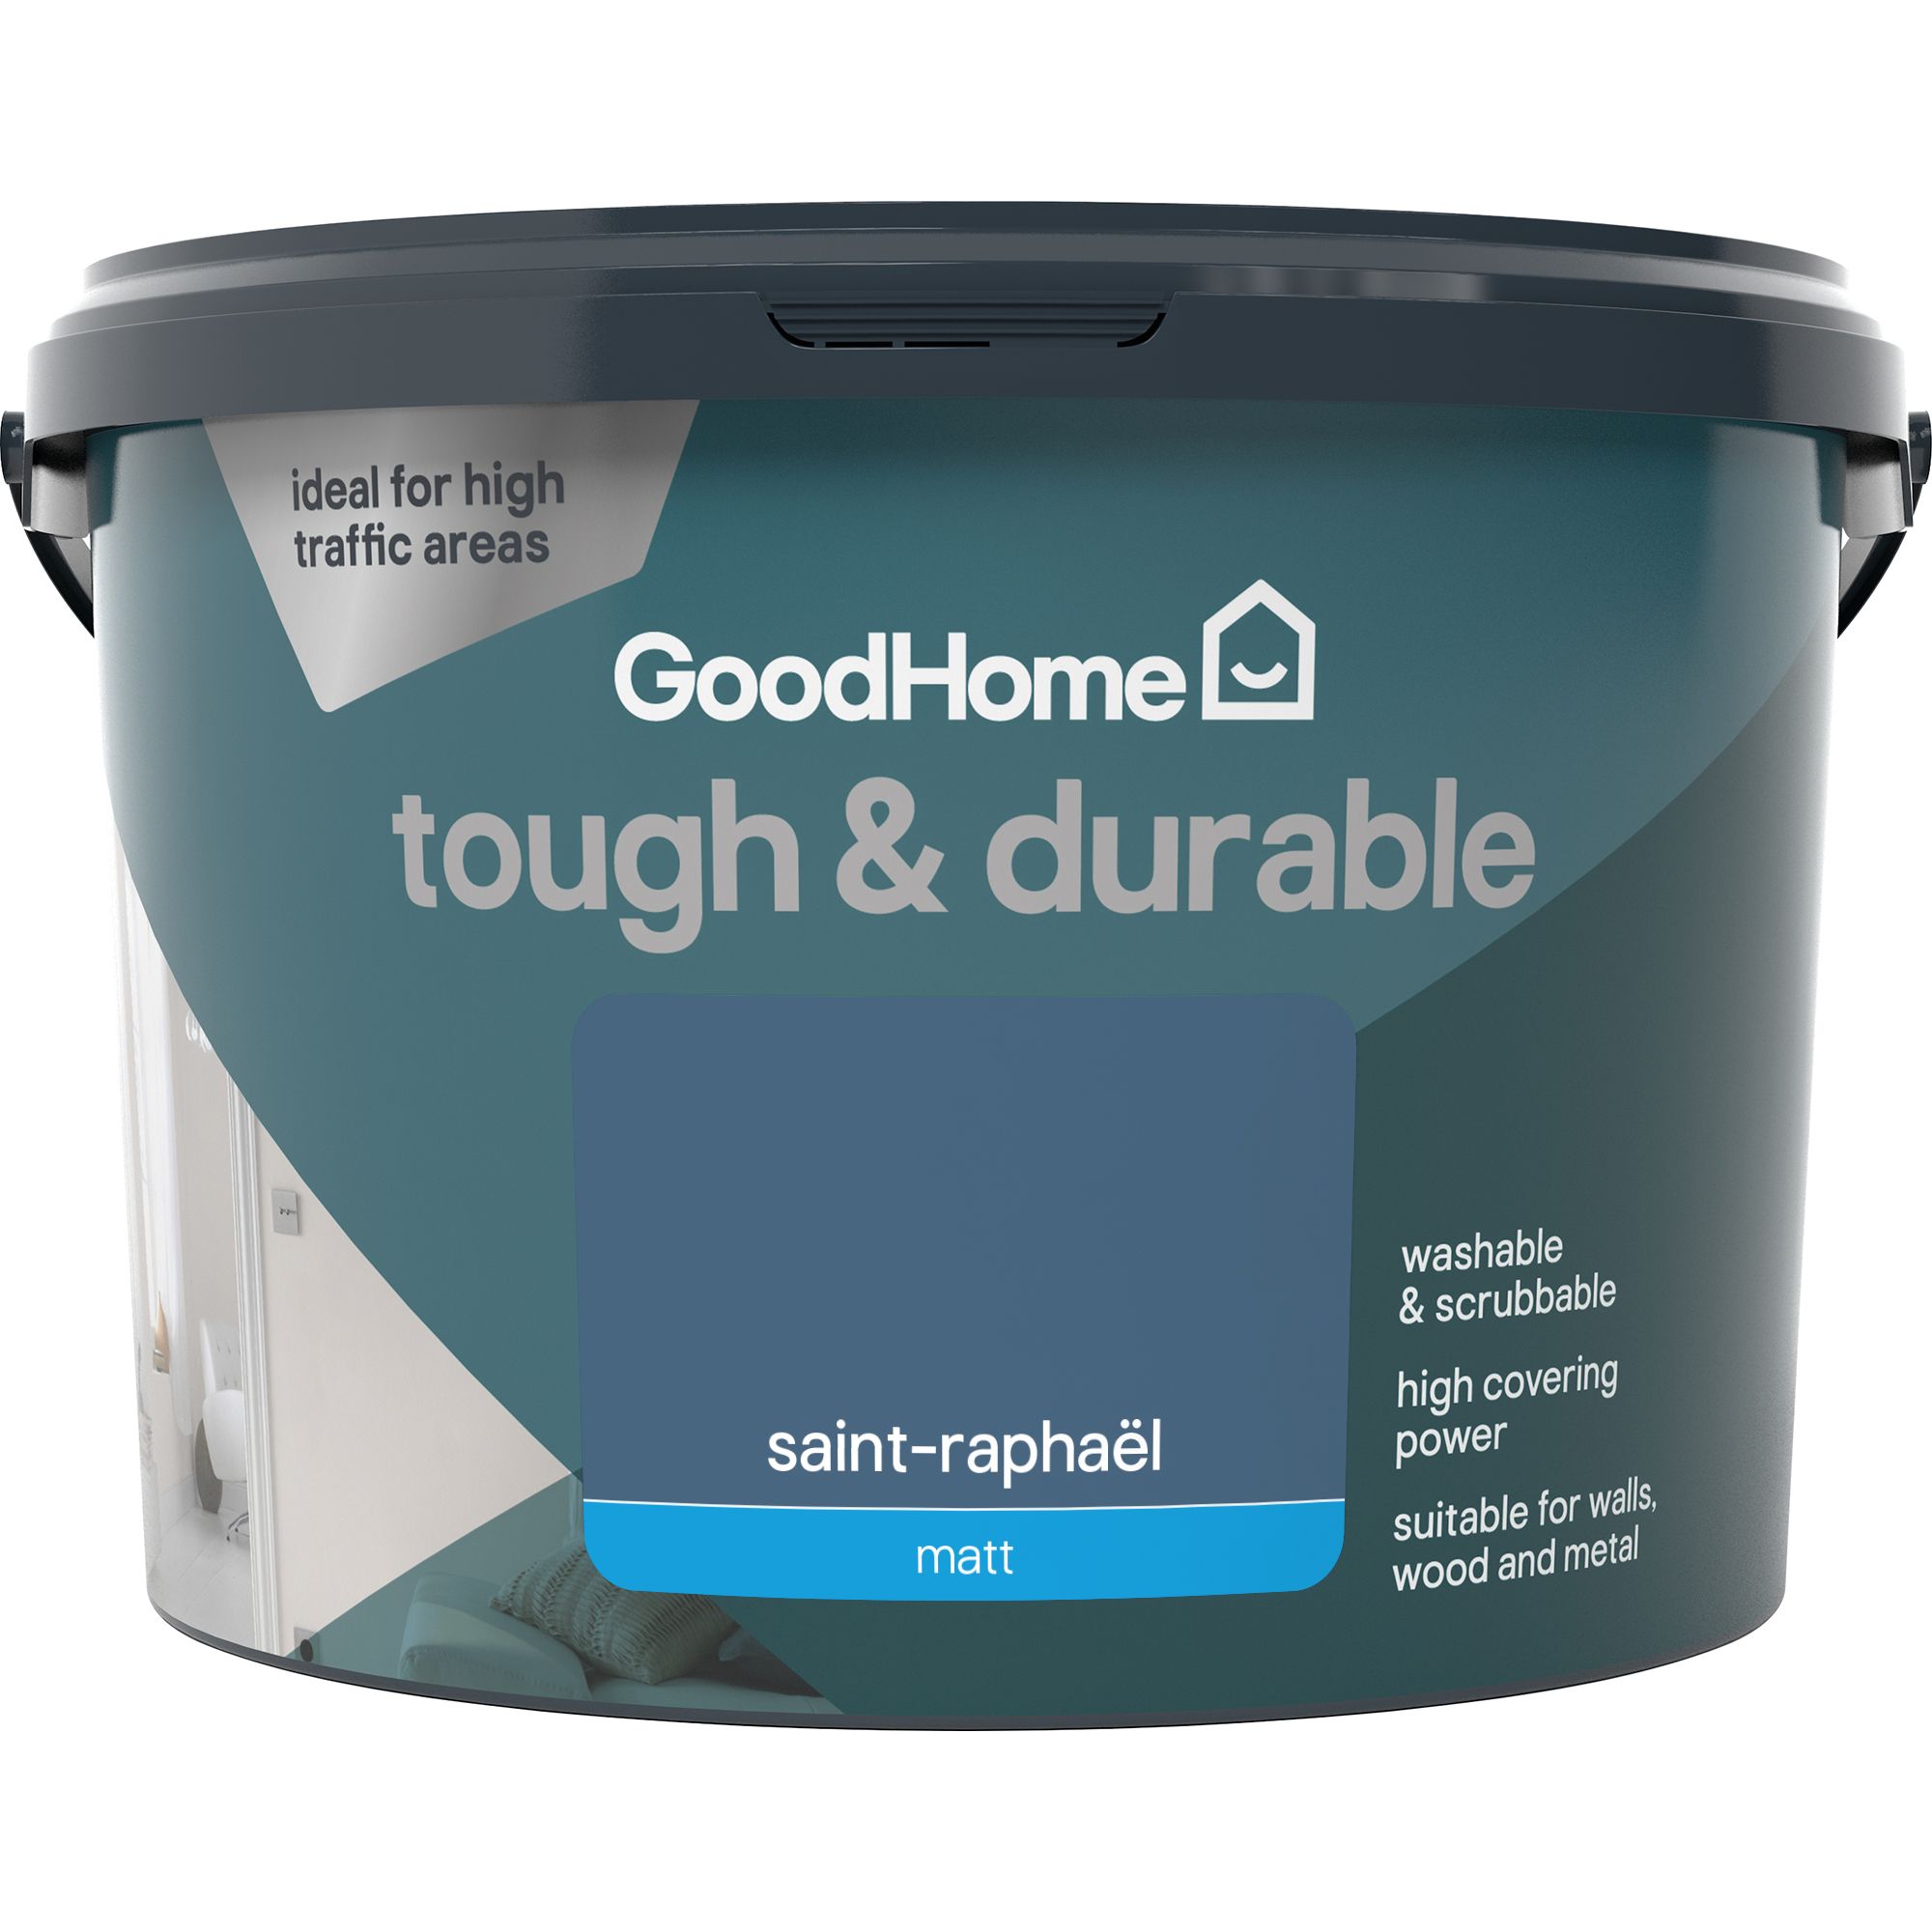 GoodHome Tough & Durable Saint-raphaël Matt Emulsion paint, 2.5L